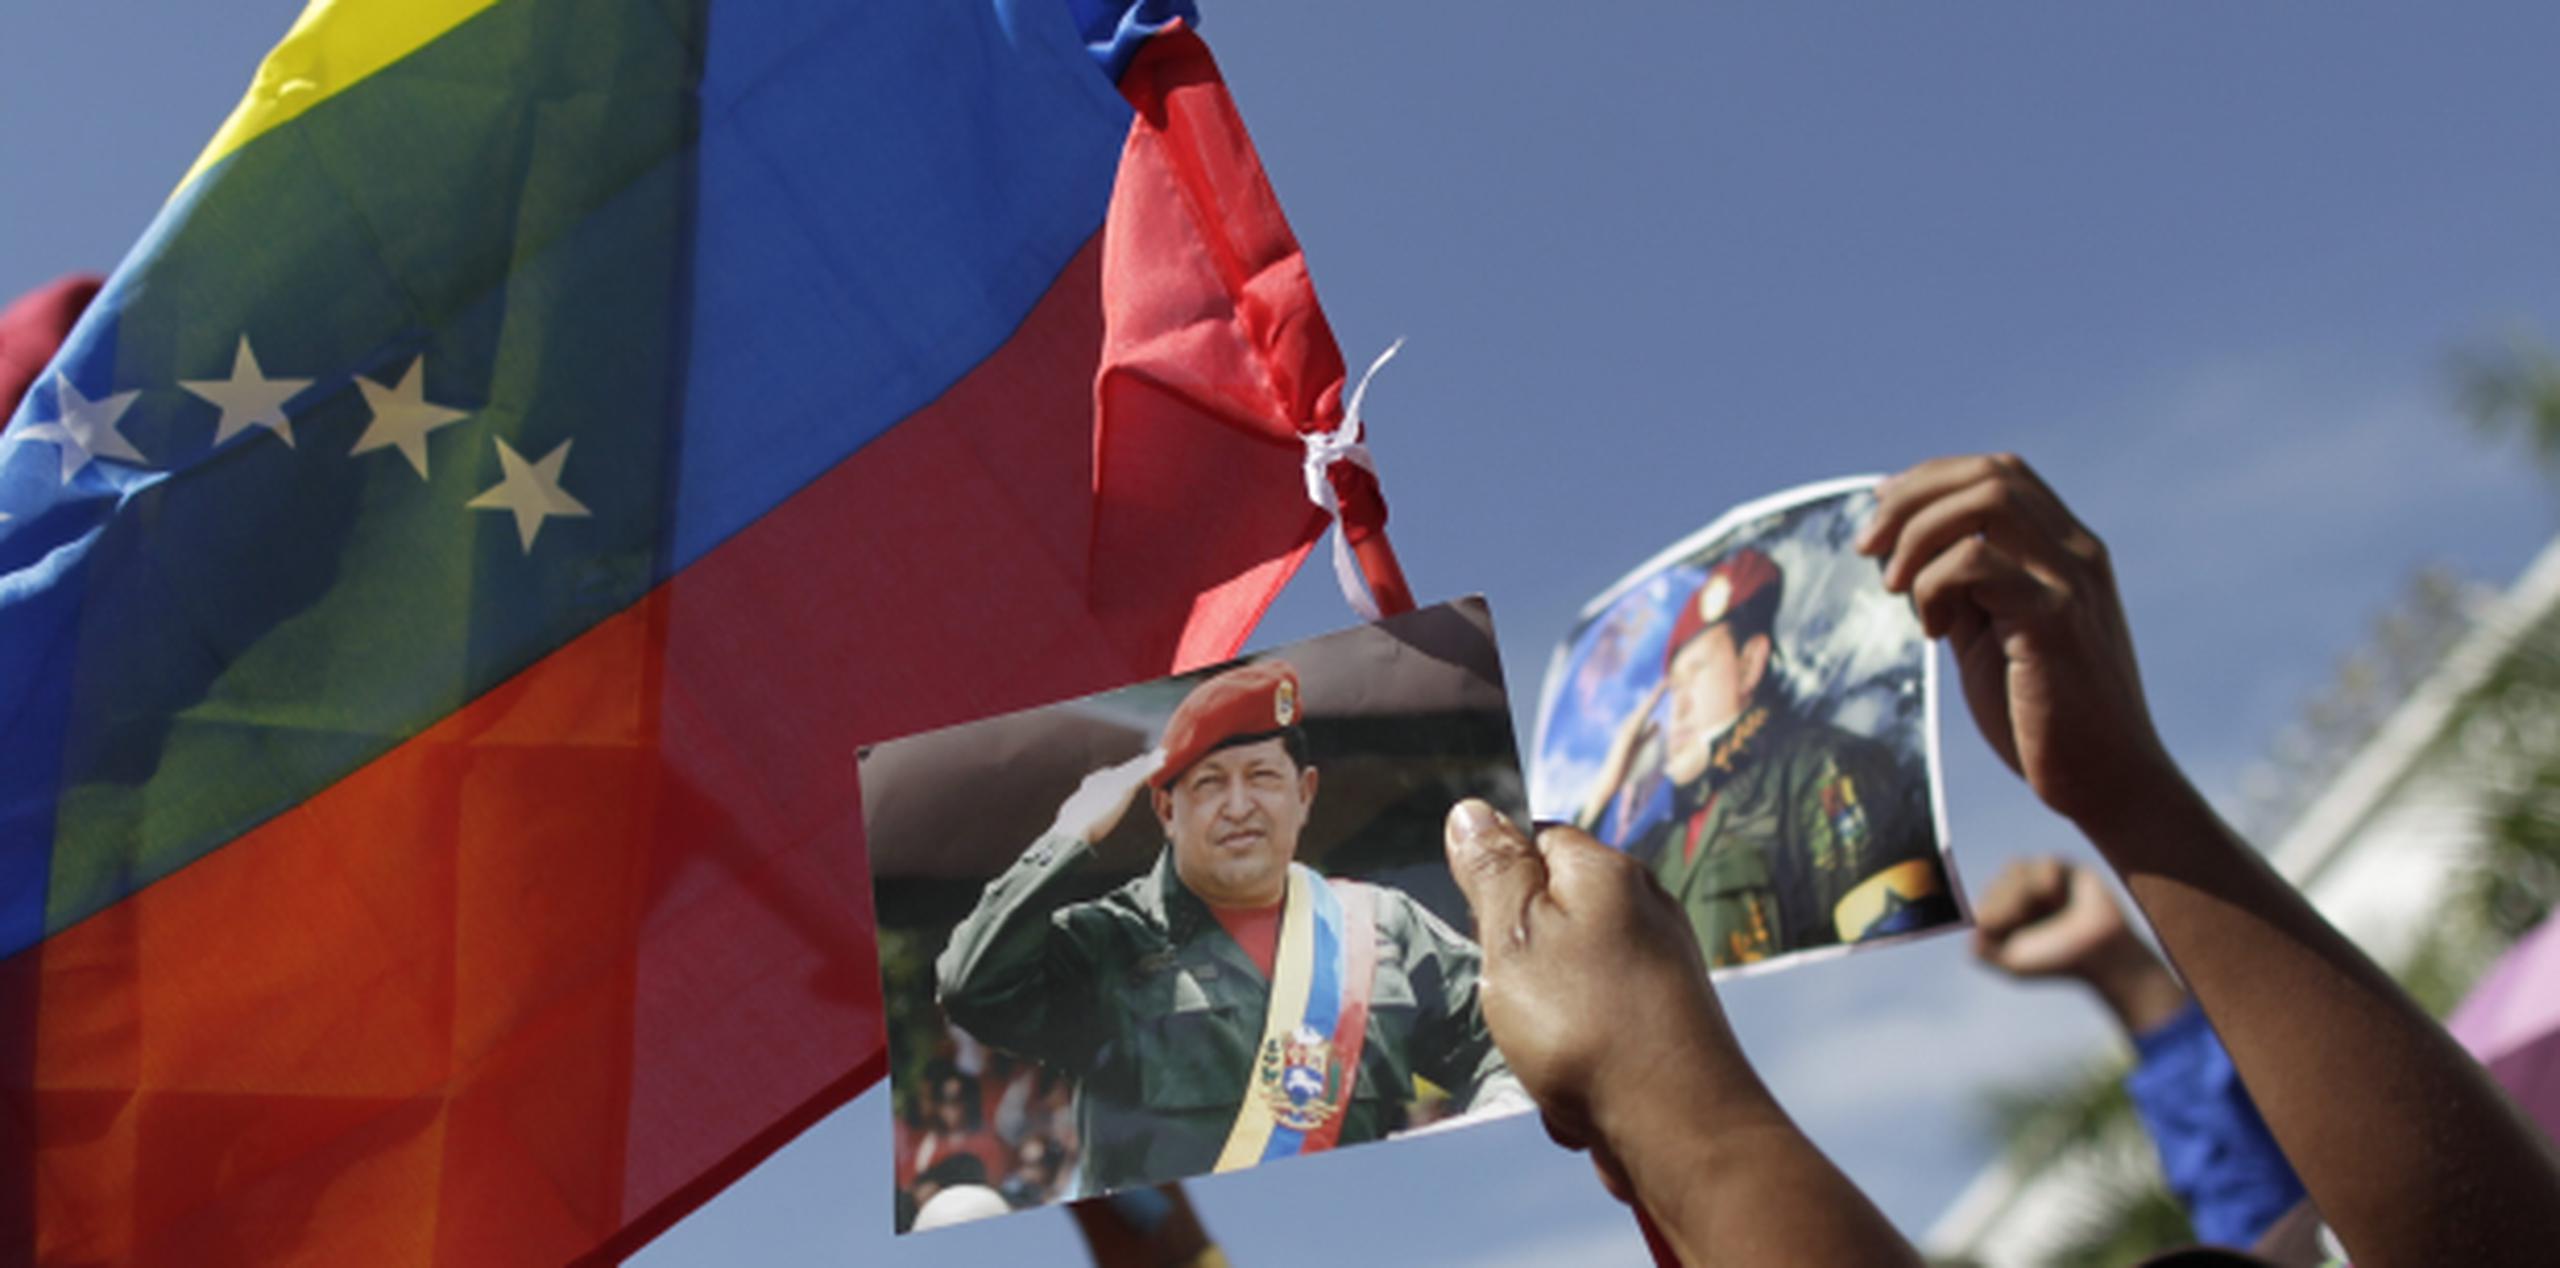 Calificaron de "duros" los momentos que viven los "militantes revolucionarios formados" por Chávez, al que califican como "Libertador del Siglo XXI". (EFE)